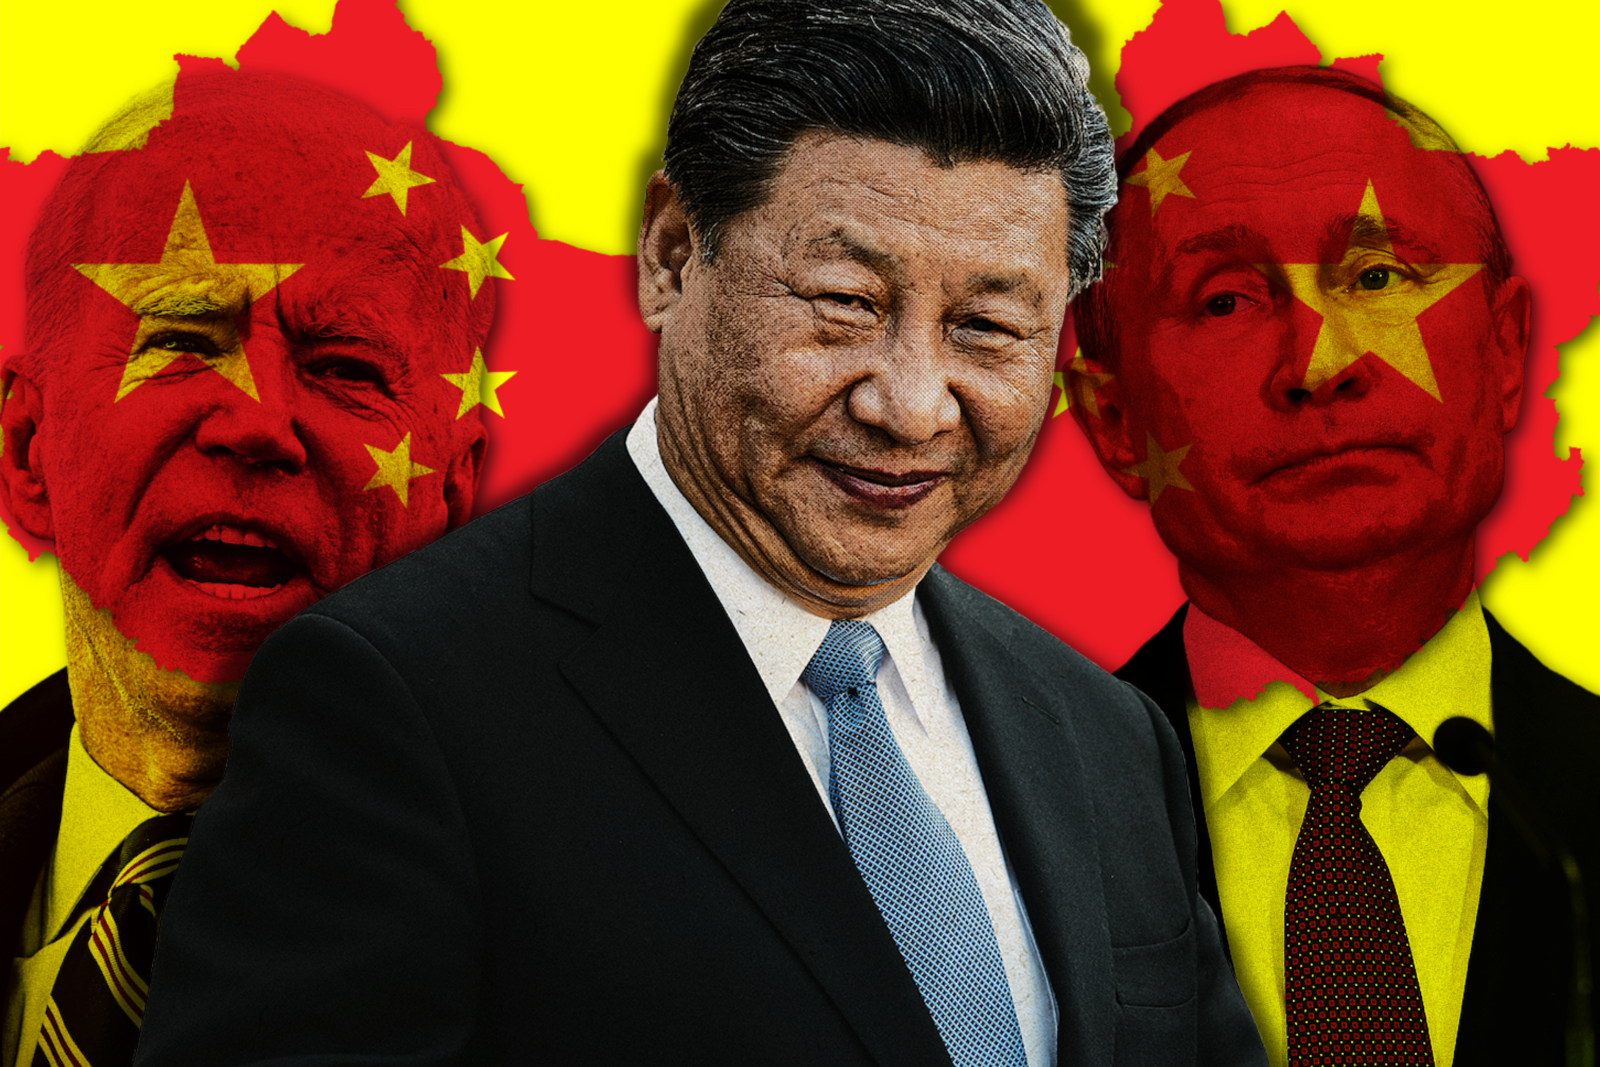 Joe Biden, Xi Jinping, and Vladimir Putin